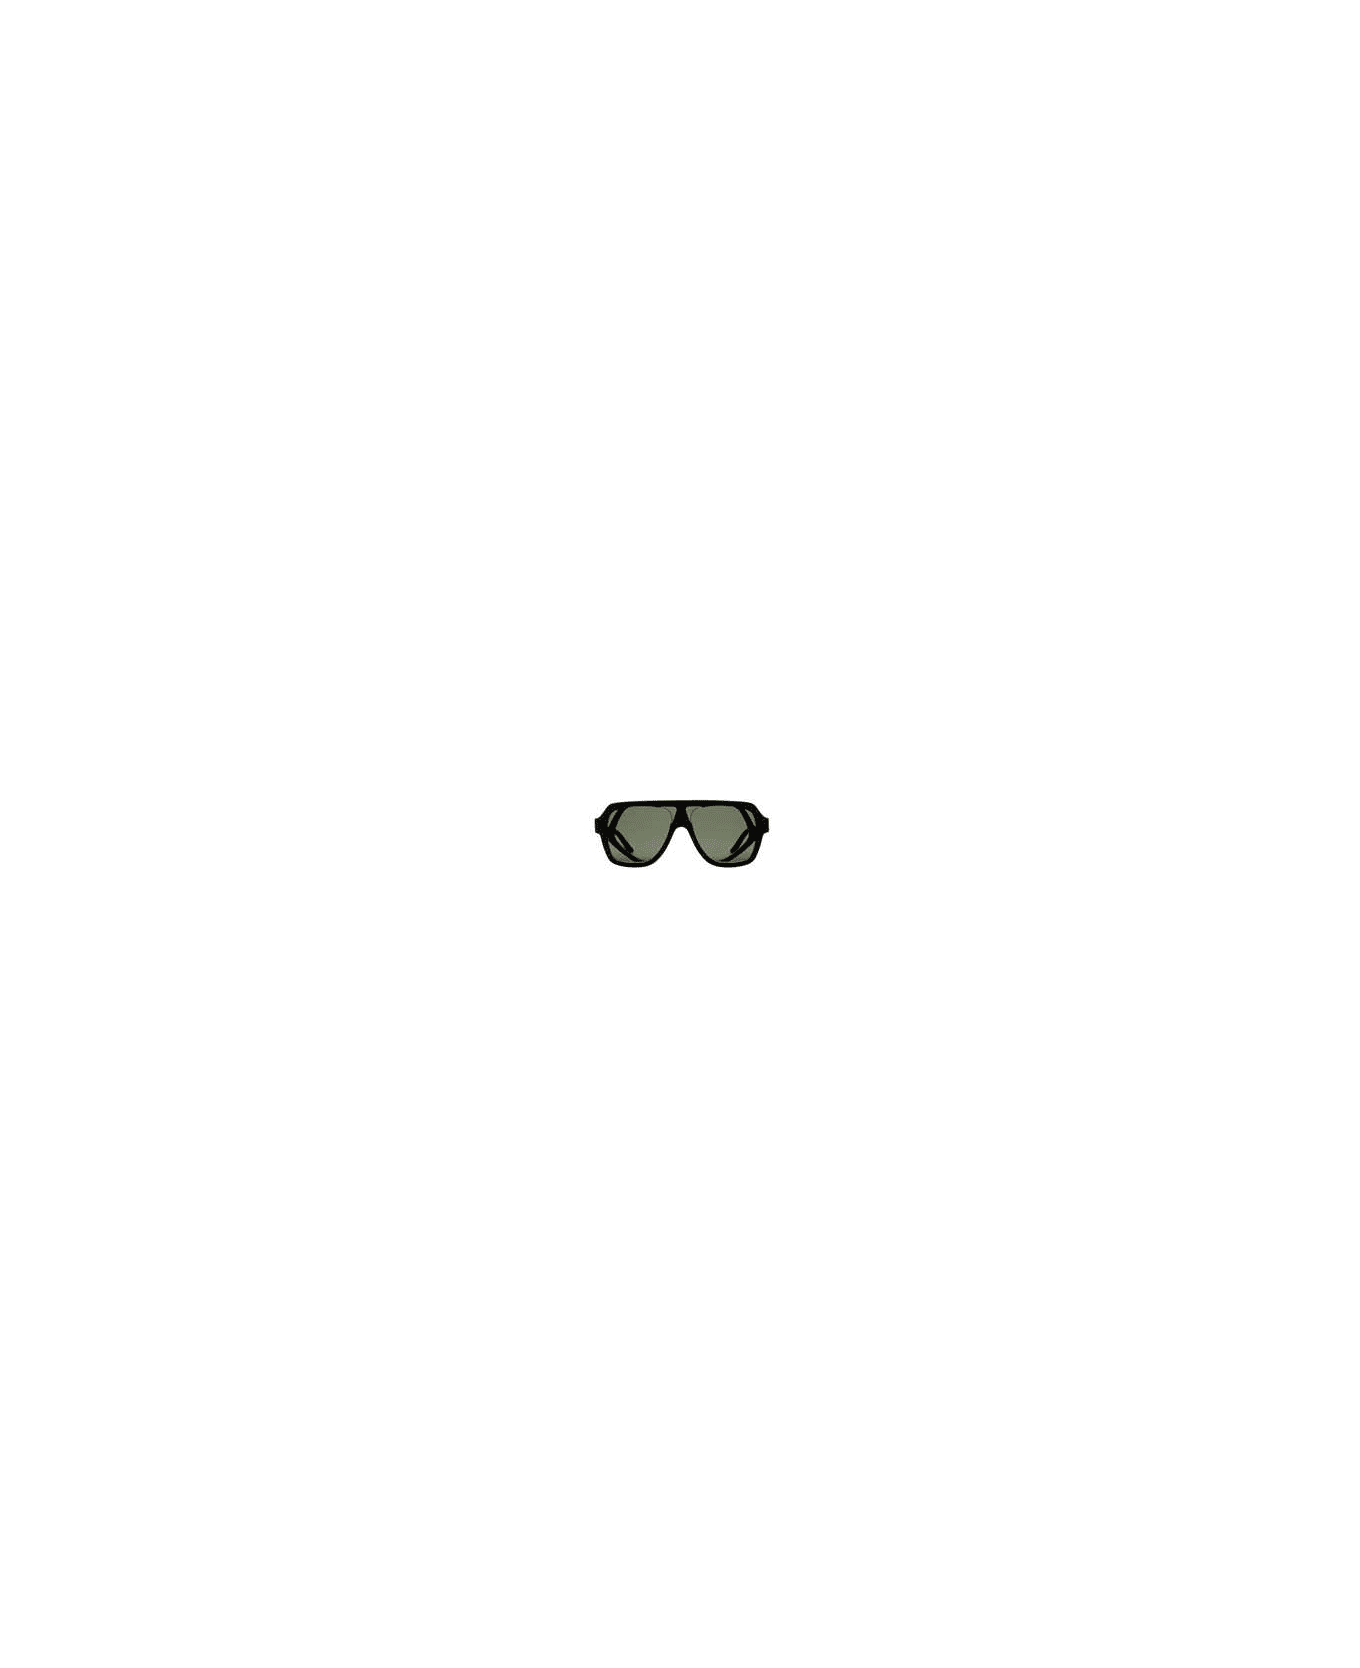 Kuboraum T11 Sunglasses - Bm サングラス